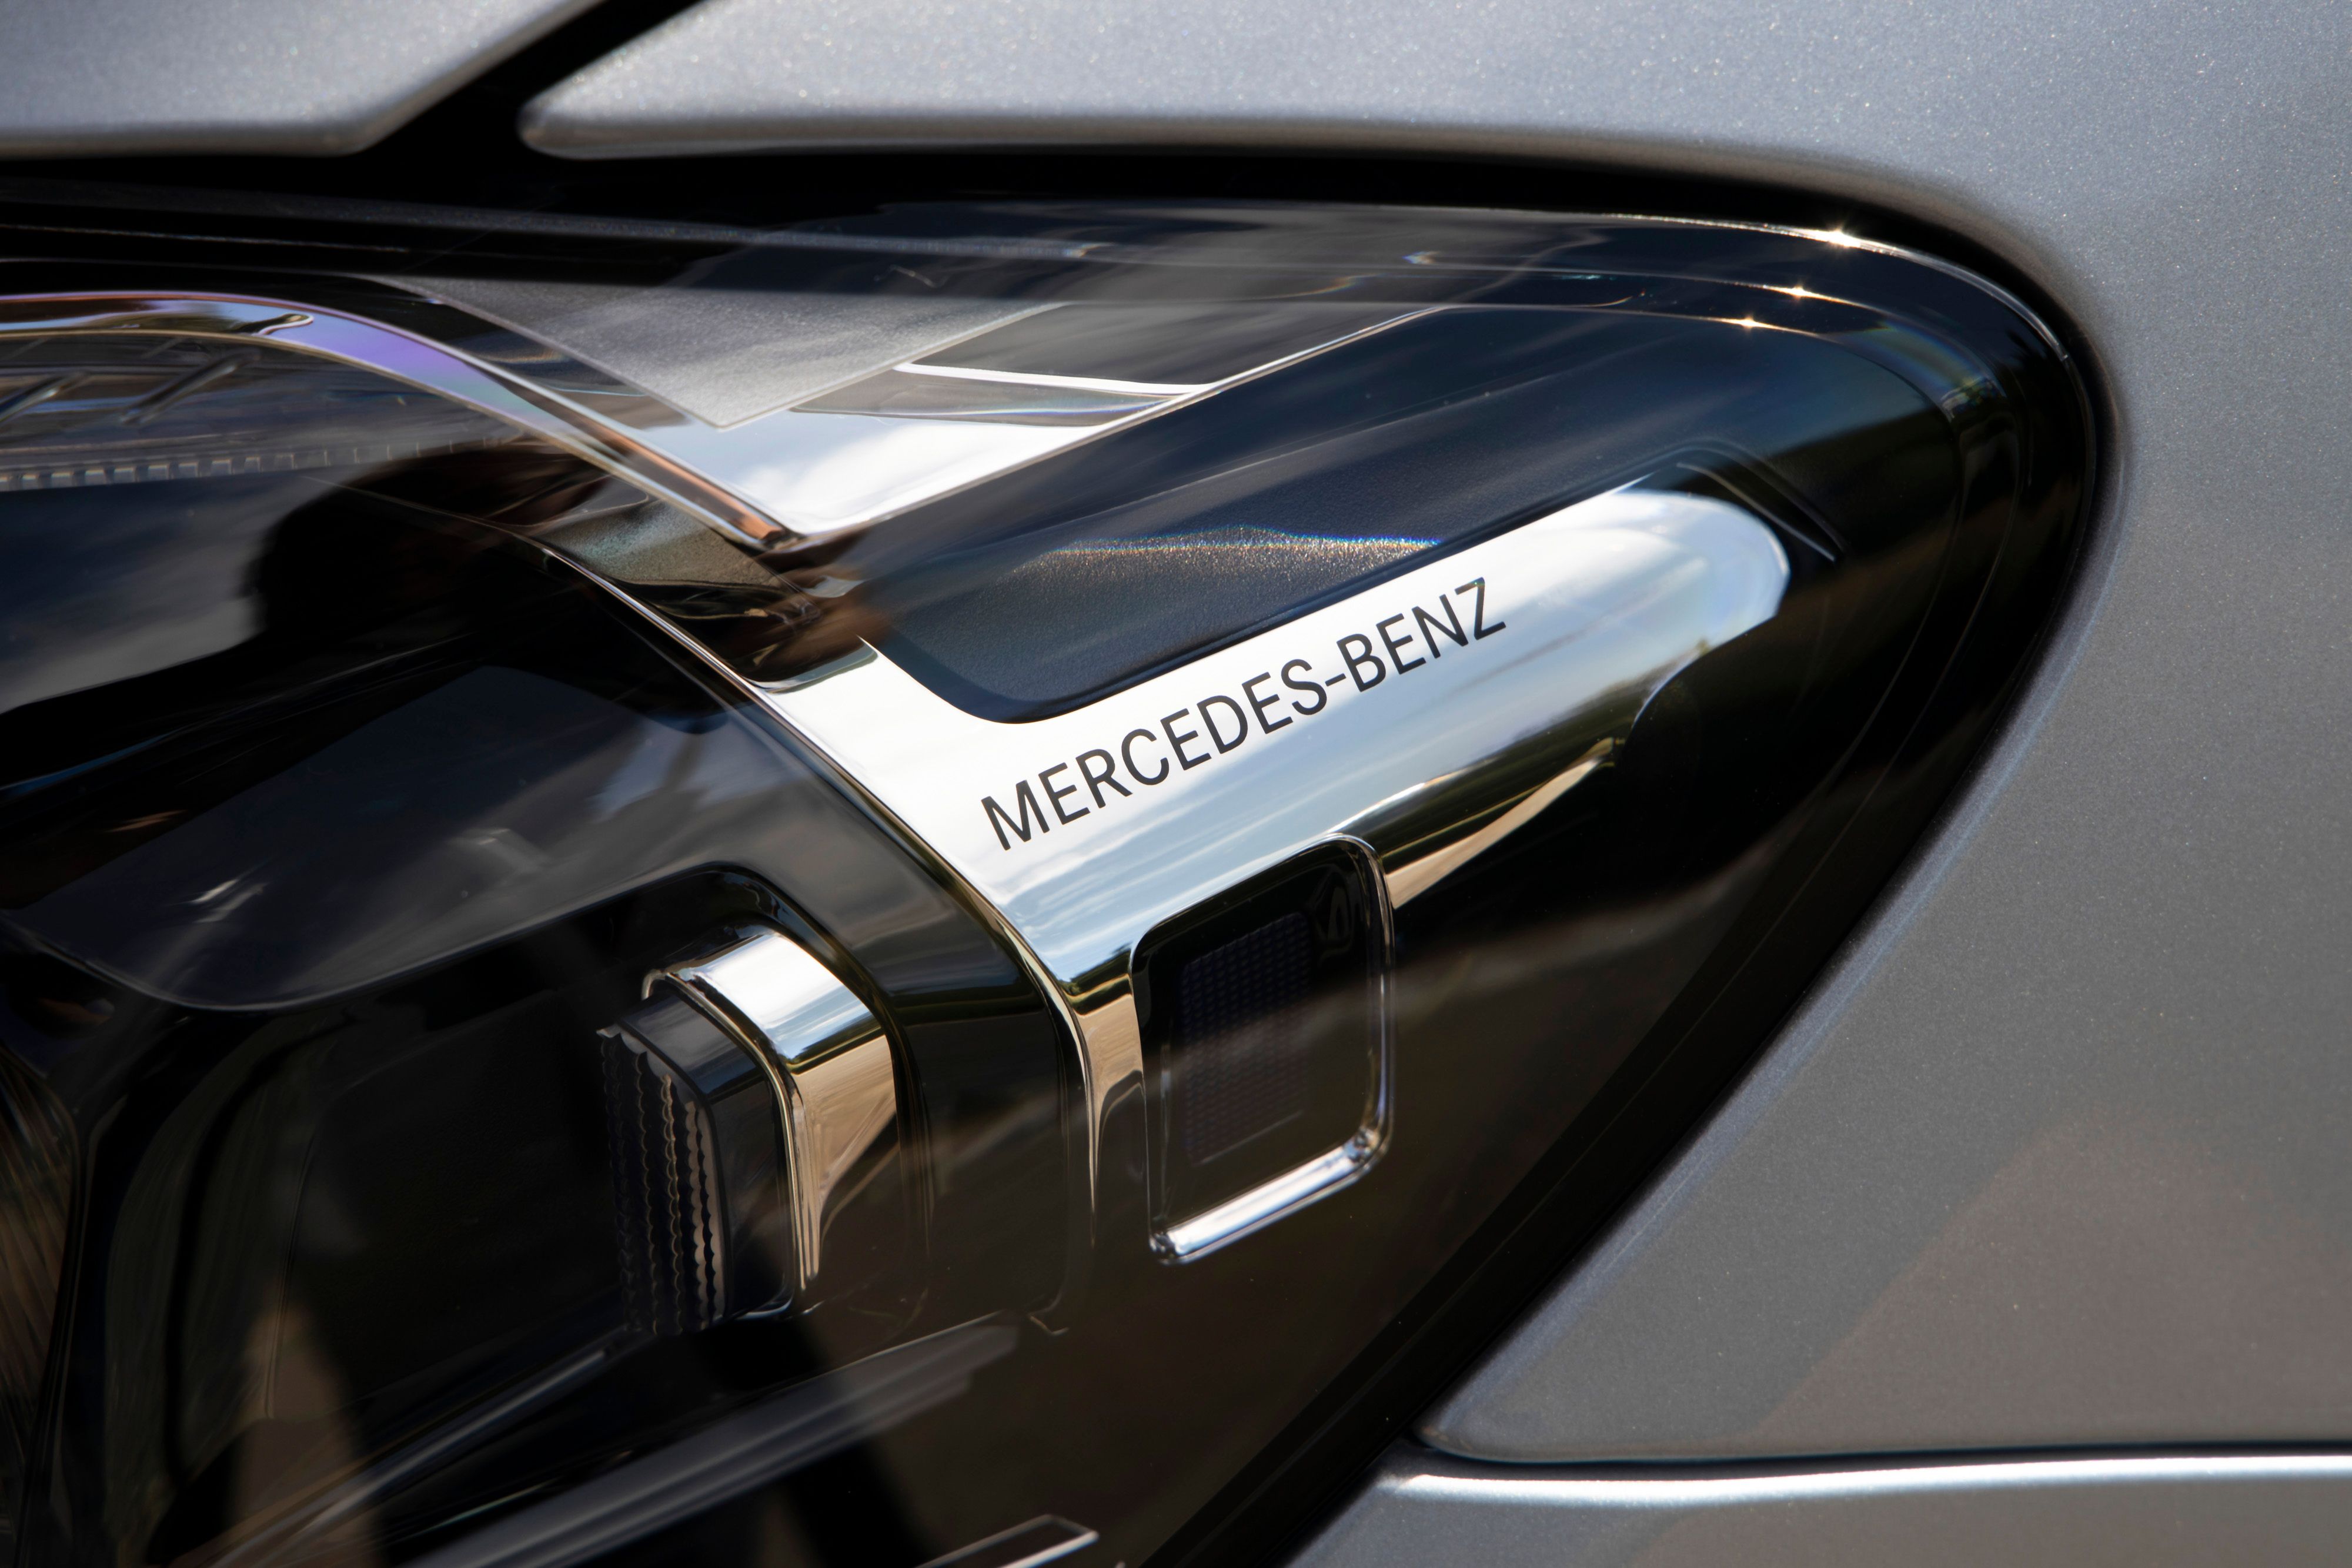 2022 Mercedes-Benz E-Class